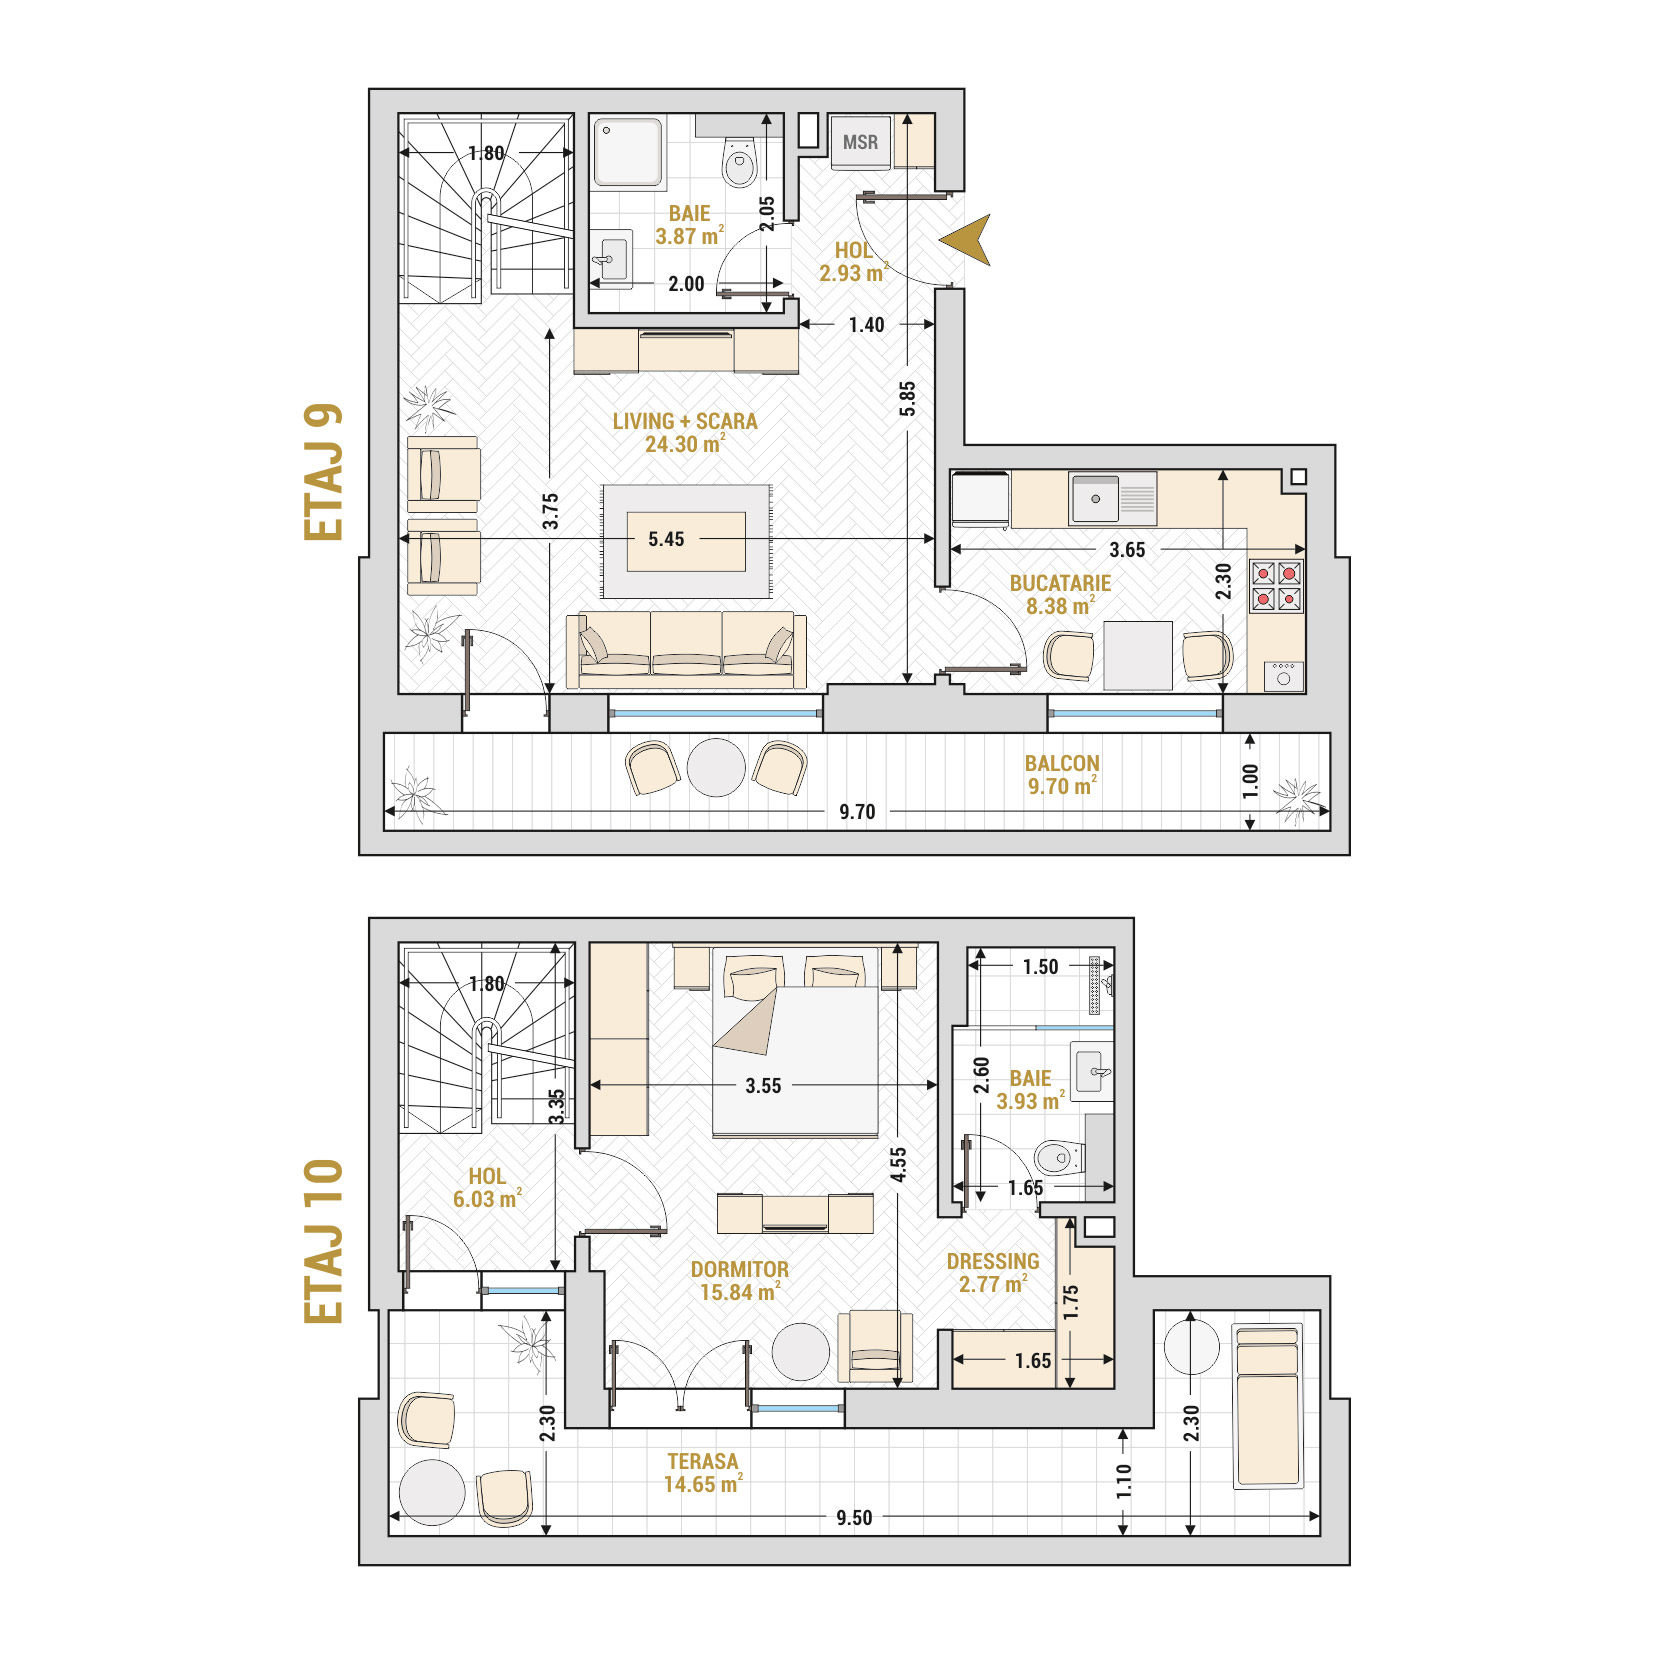 Penthouse 2 Camere Tip 3 Corp 2 - Drumul Taberei Residence - Apartamente de vanzare Bucuresti - Suprafata utila totala - 92.40 mp